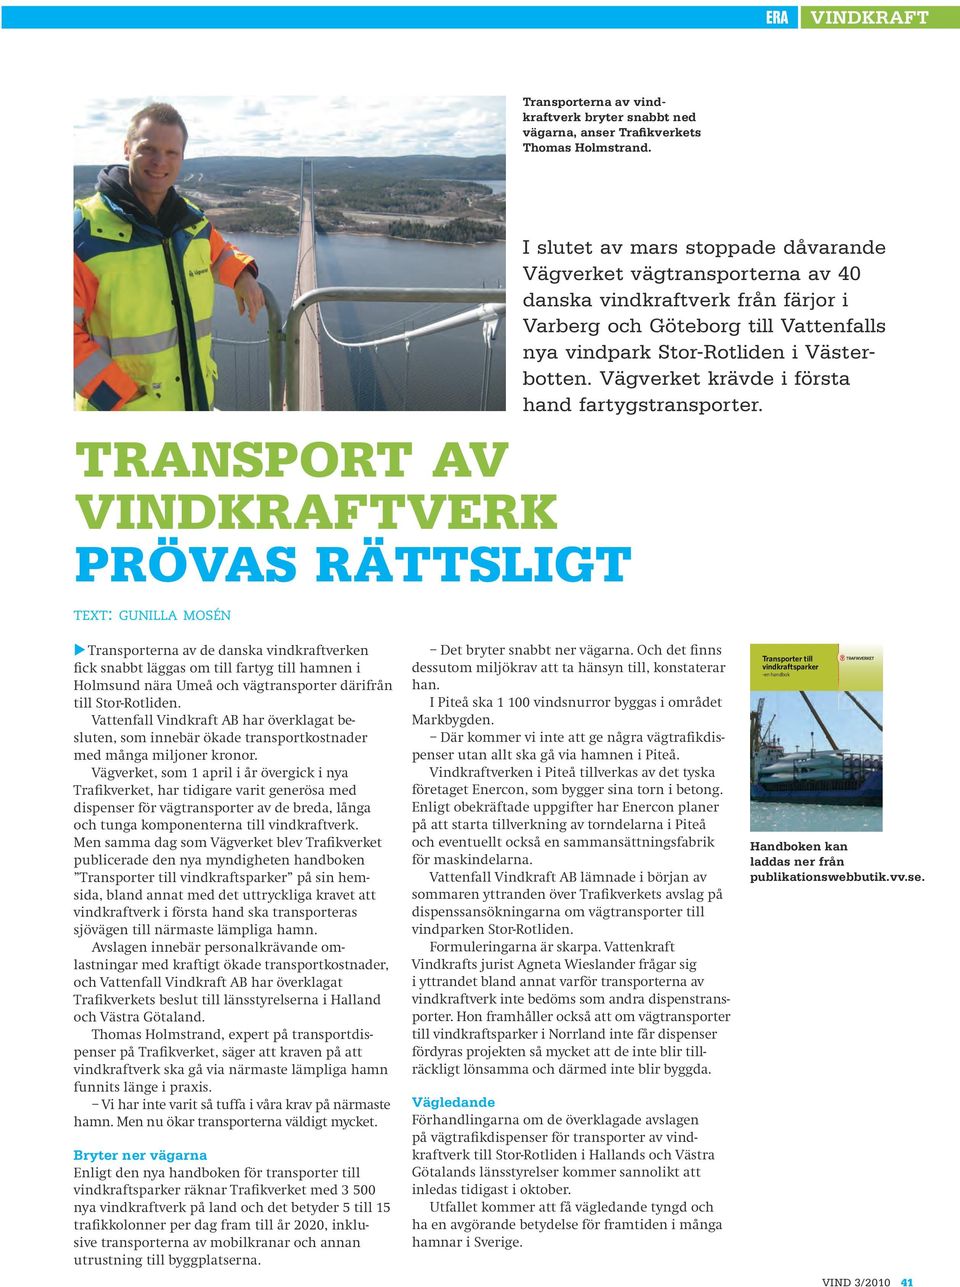 Vattenfalls nya vindpark Stor-Rotliden i Västerbotten. Vägverket krävde i första hand fartygstransporter.